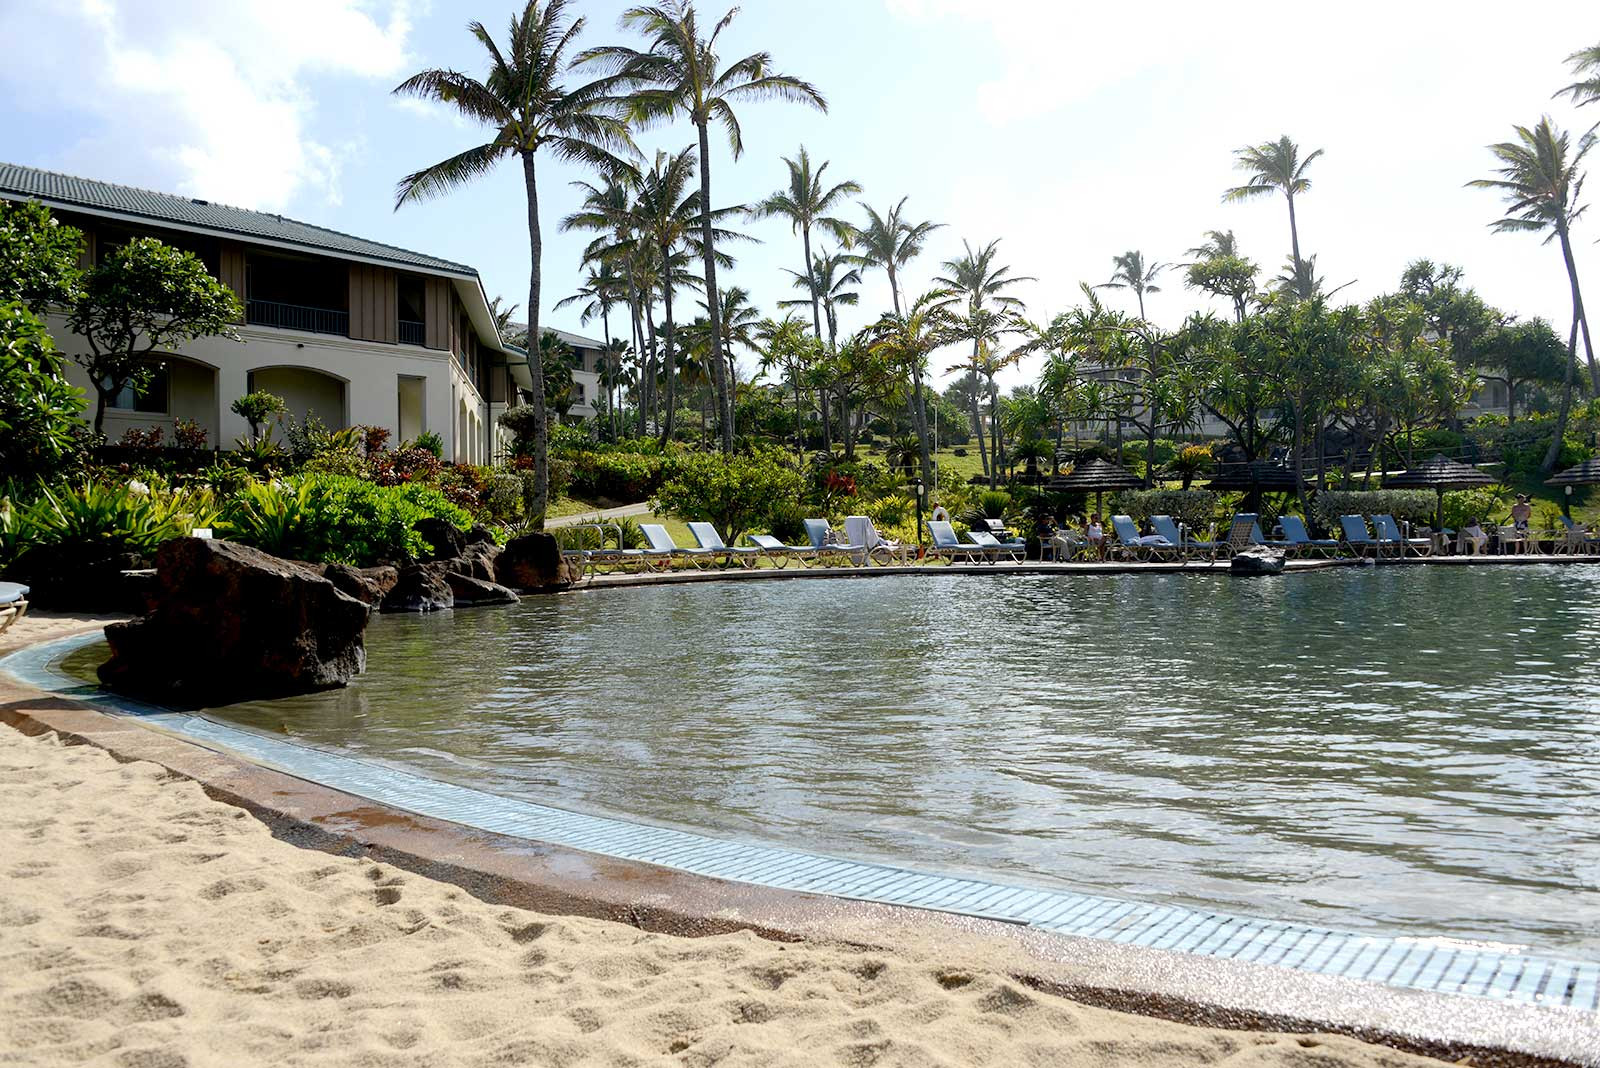 Diamond Resorts - The Point at Poipu, Kauai timeshare resales